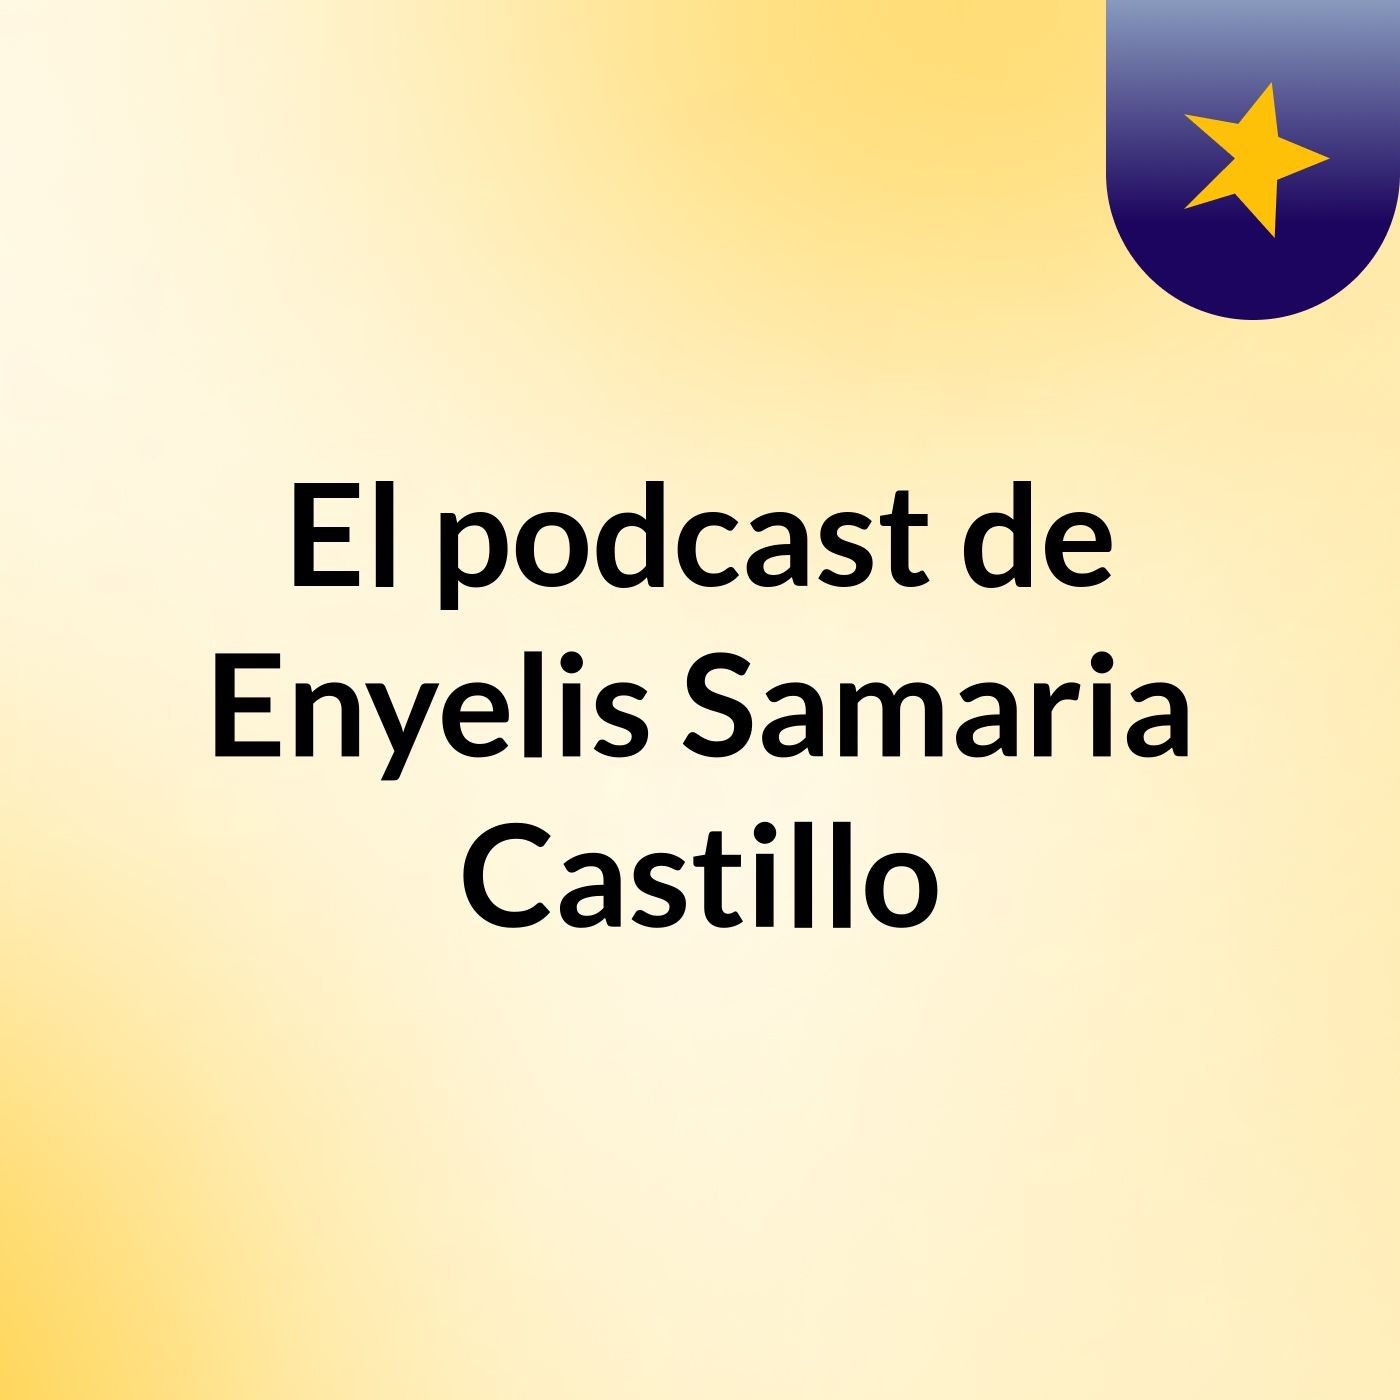 El podcast de Enyelis Samaria Castillo